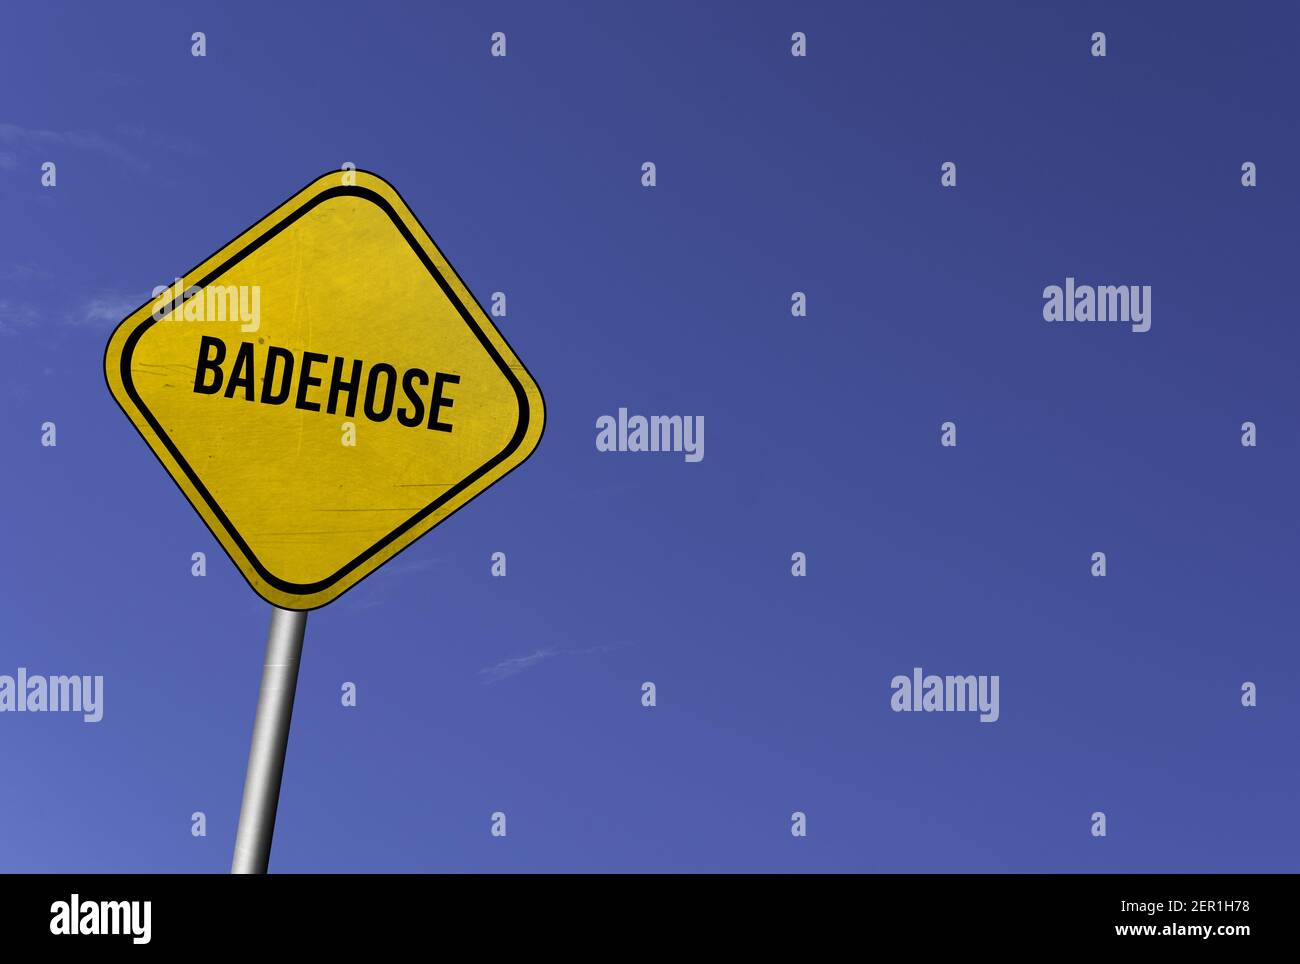 badehose - segno giallo con sfondo blu cielo Foto Stock